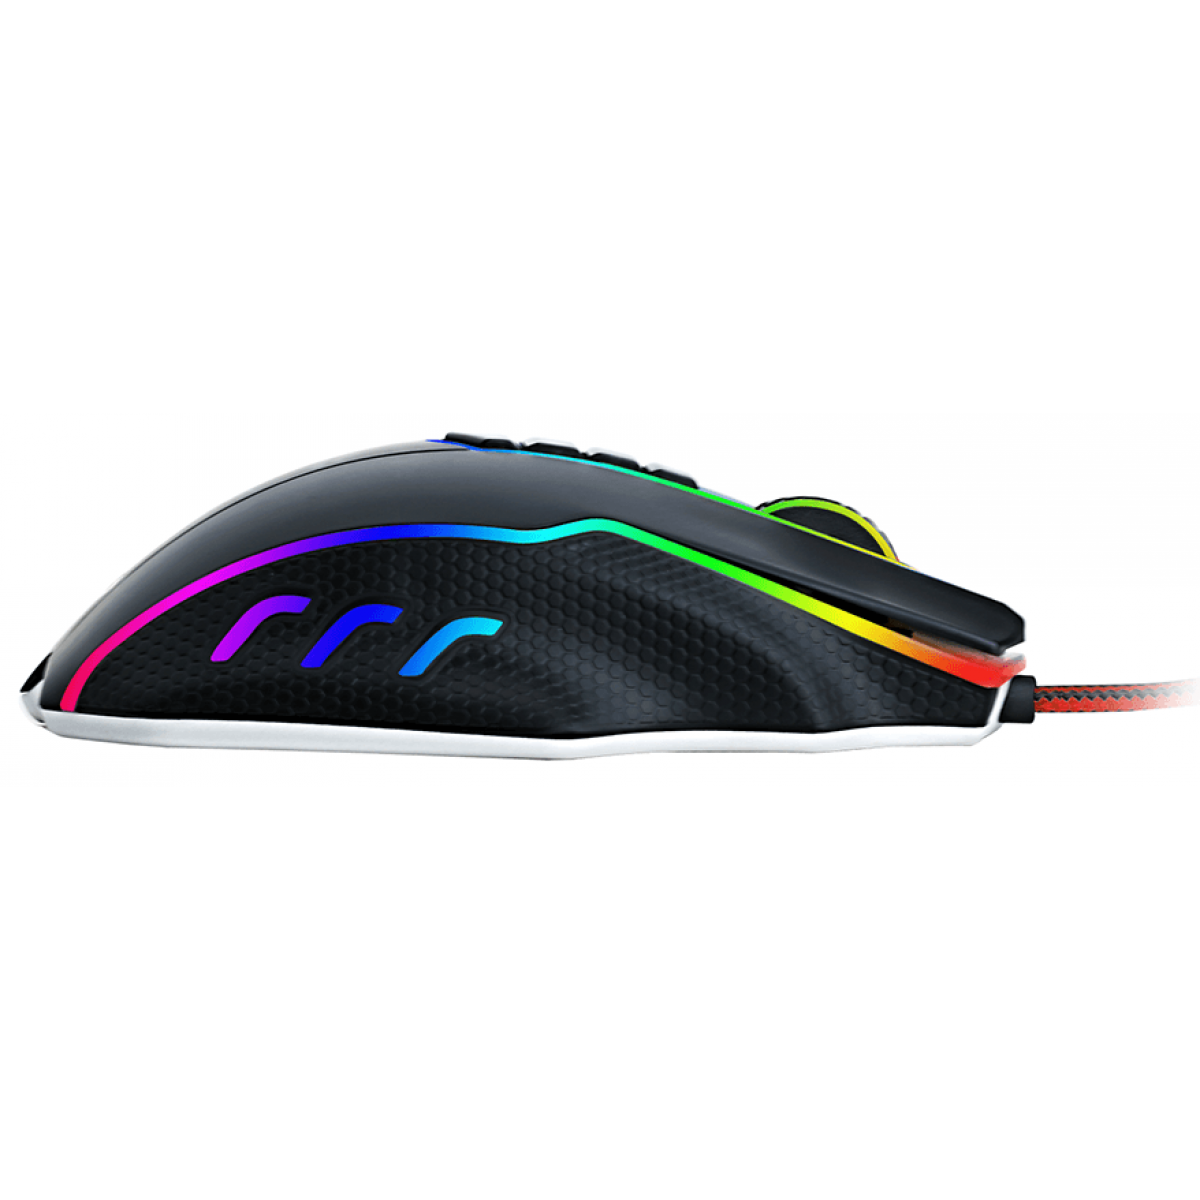 Mouse Gamer Redragon Titanoboa 2 Chroma, 24000 DPI, 10 Botões, Black, M802-RGB